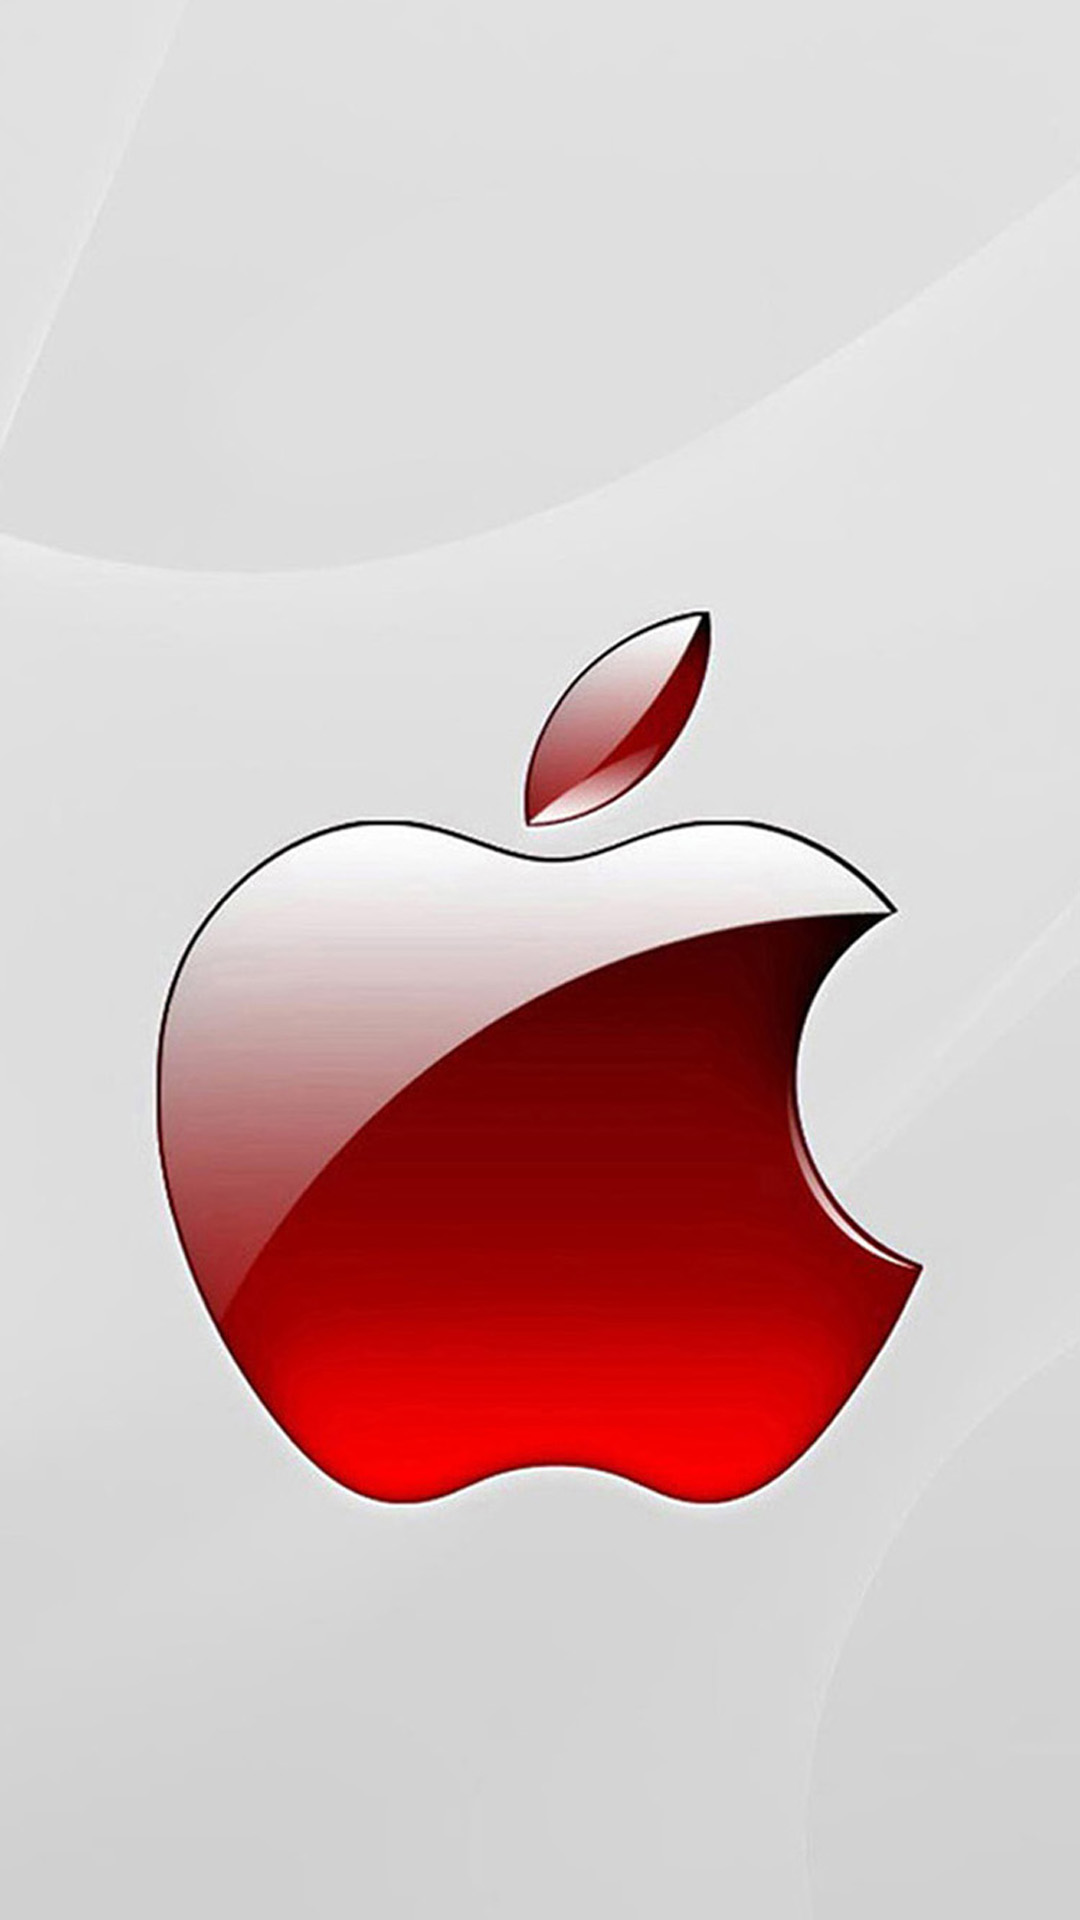 apple iphone 6 wallpaper download